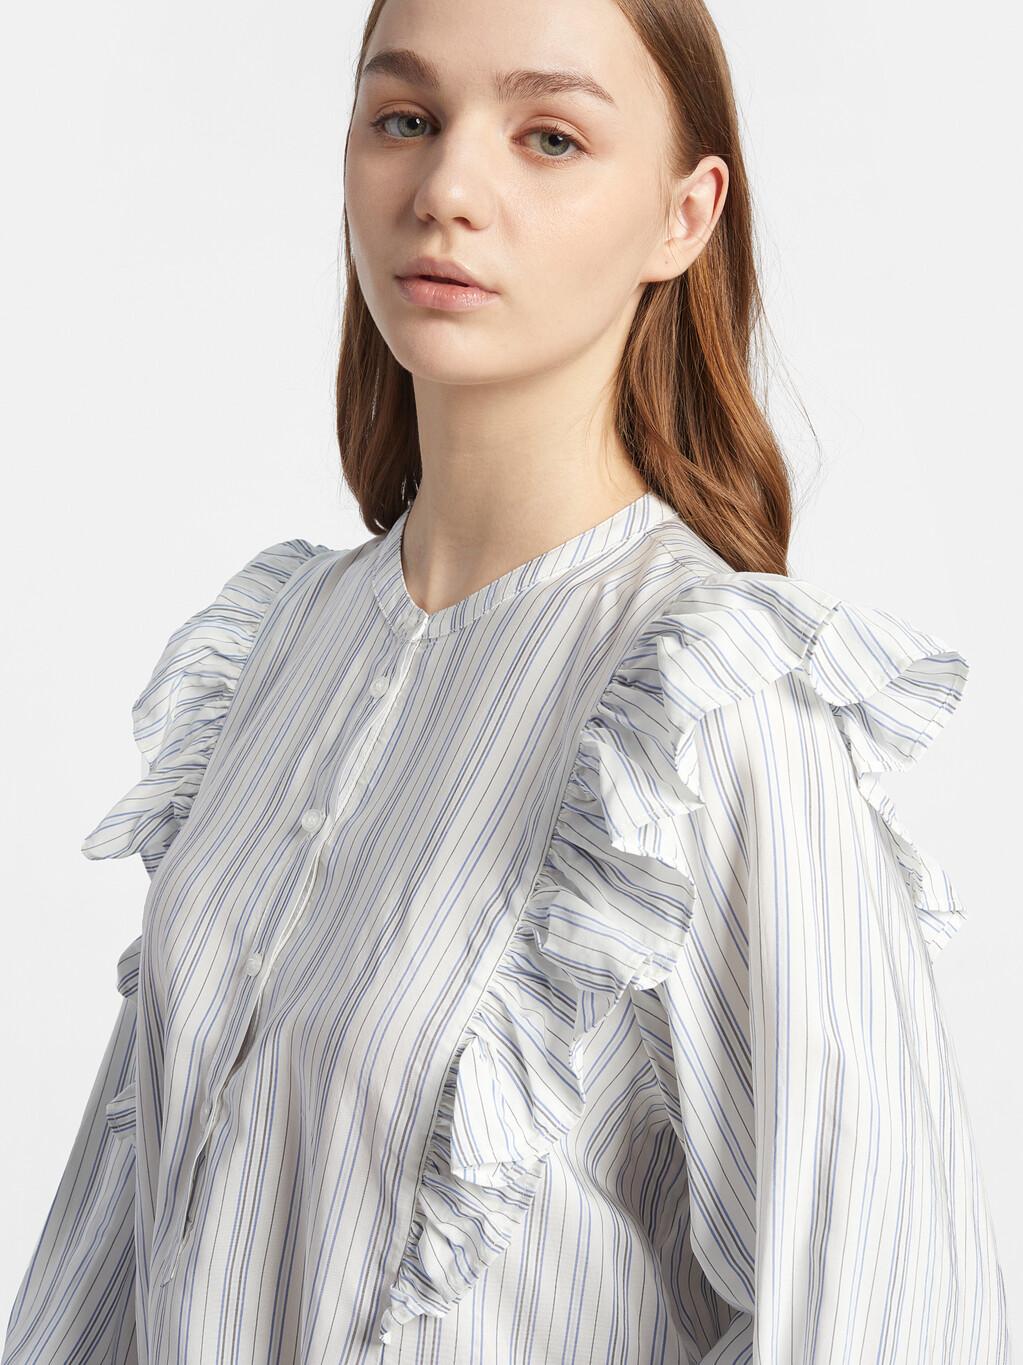 粘膠條紋花邊襯衫, Textured Stripe /Ecru Blue, hi-res